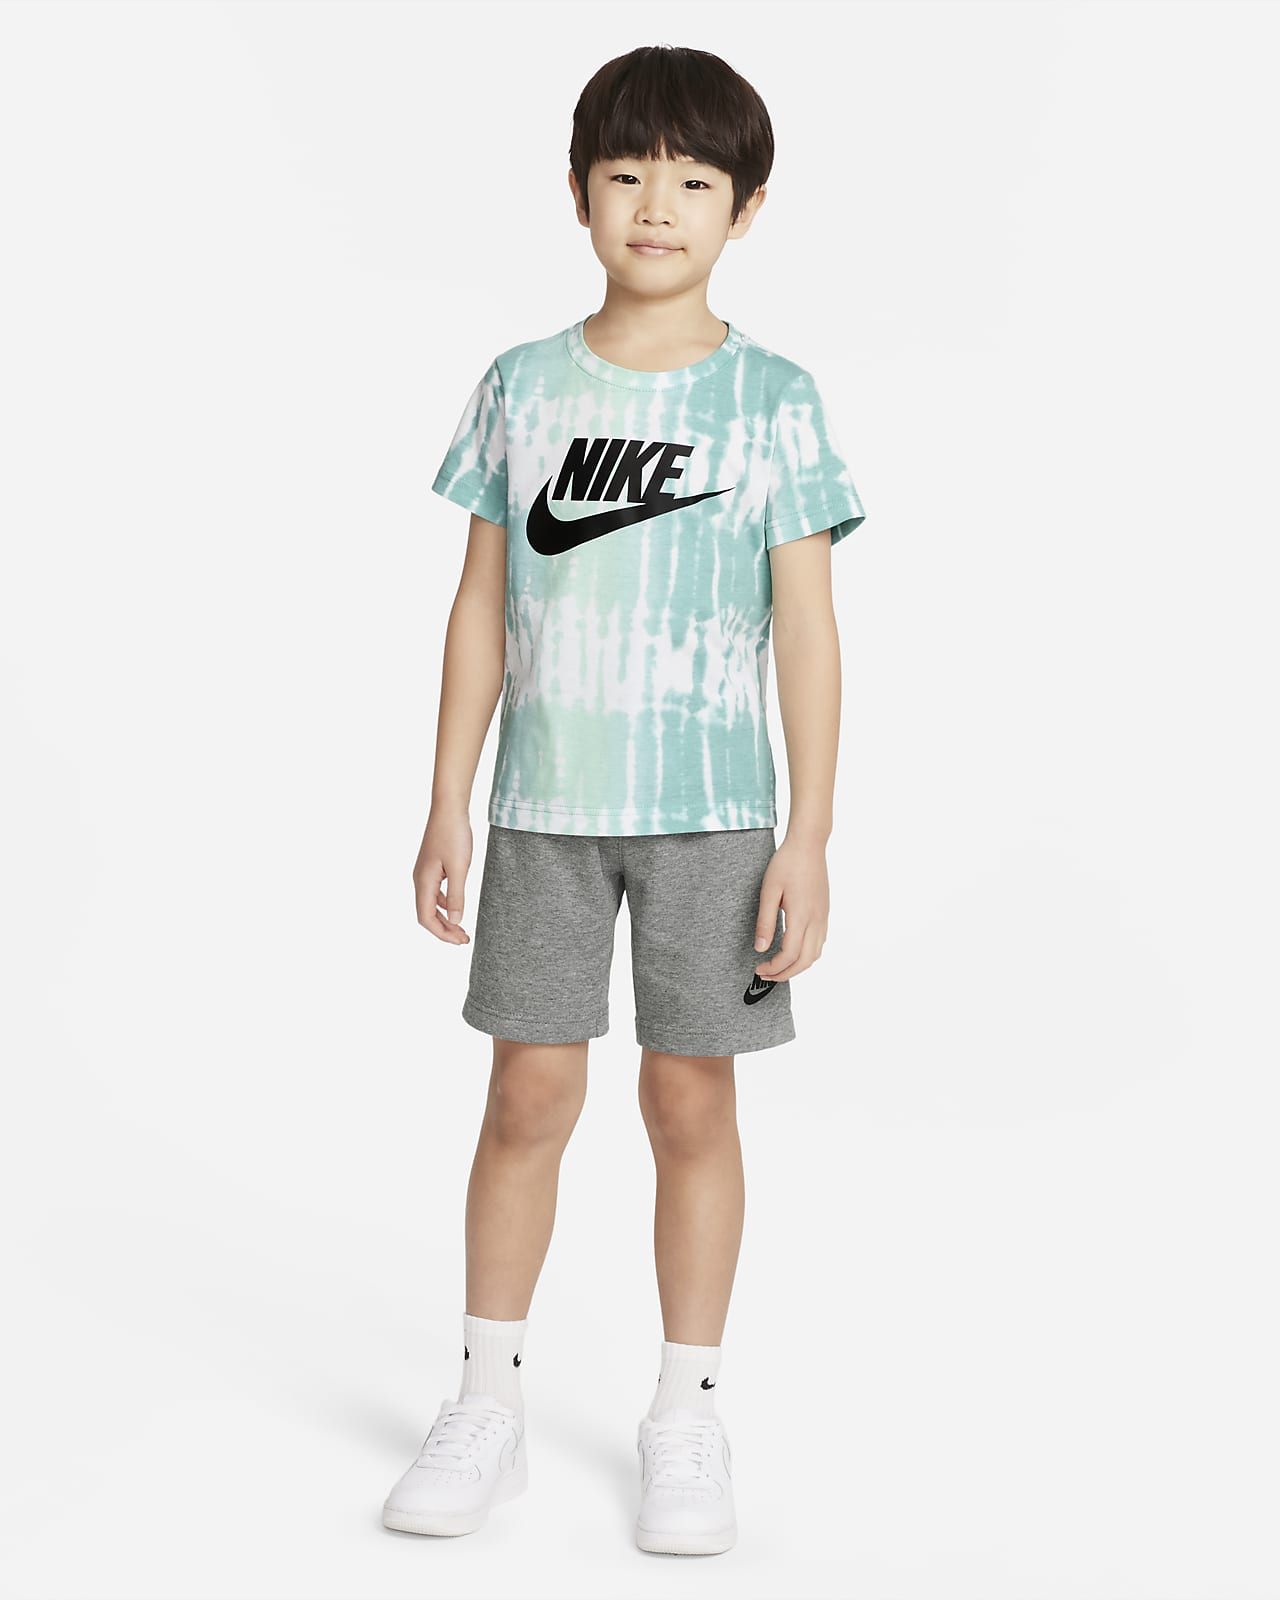 Conjunto de playera y shorts para talla pequeña Nike Sportswear. Nike .com